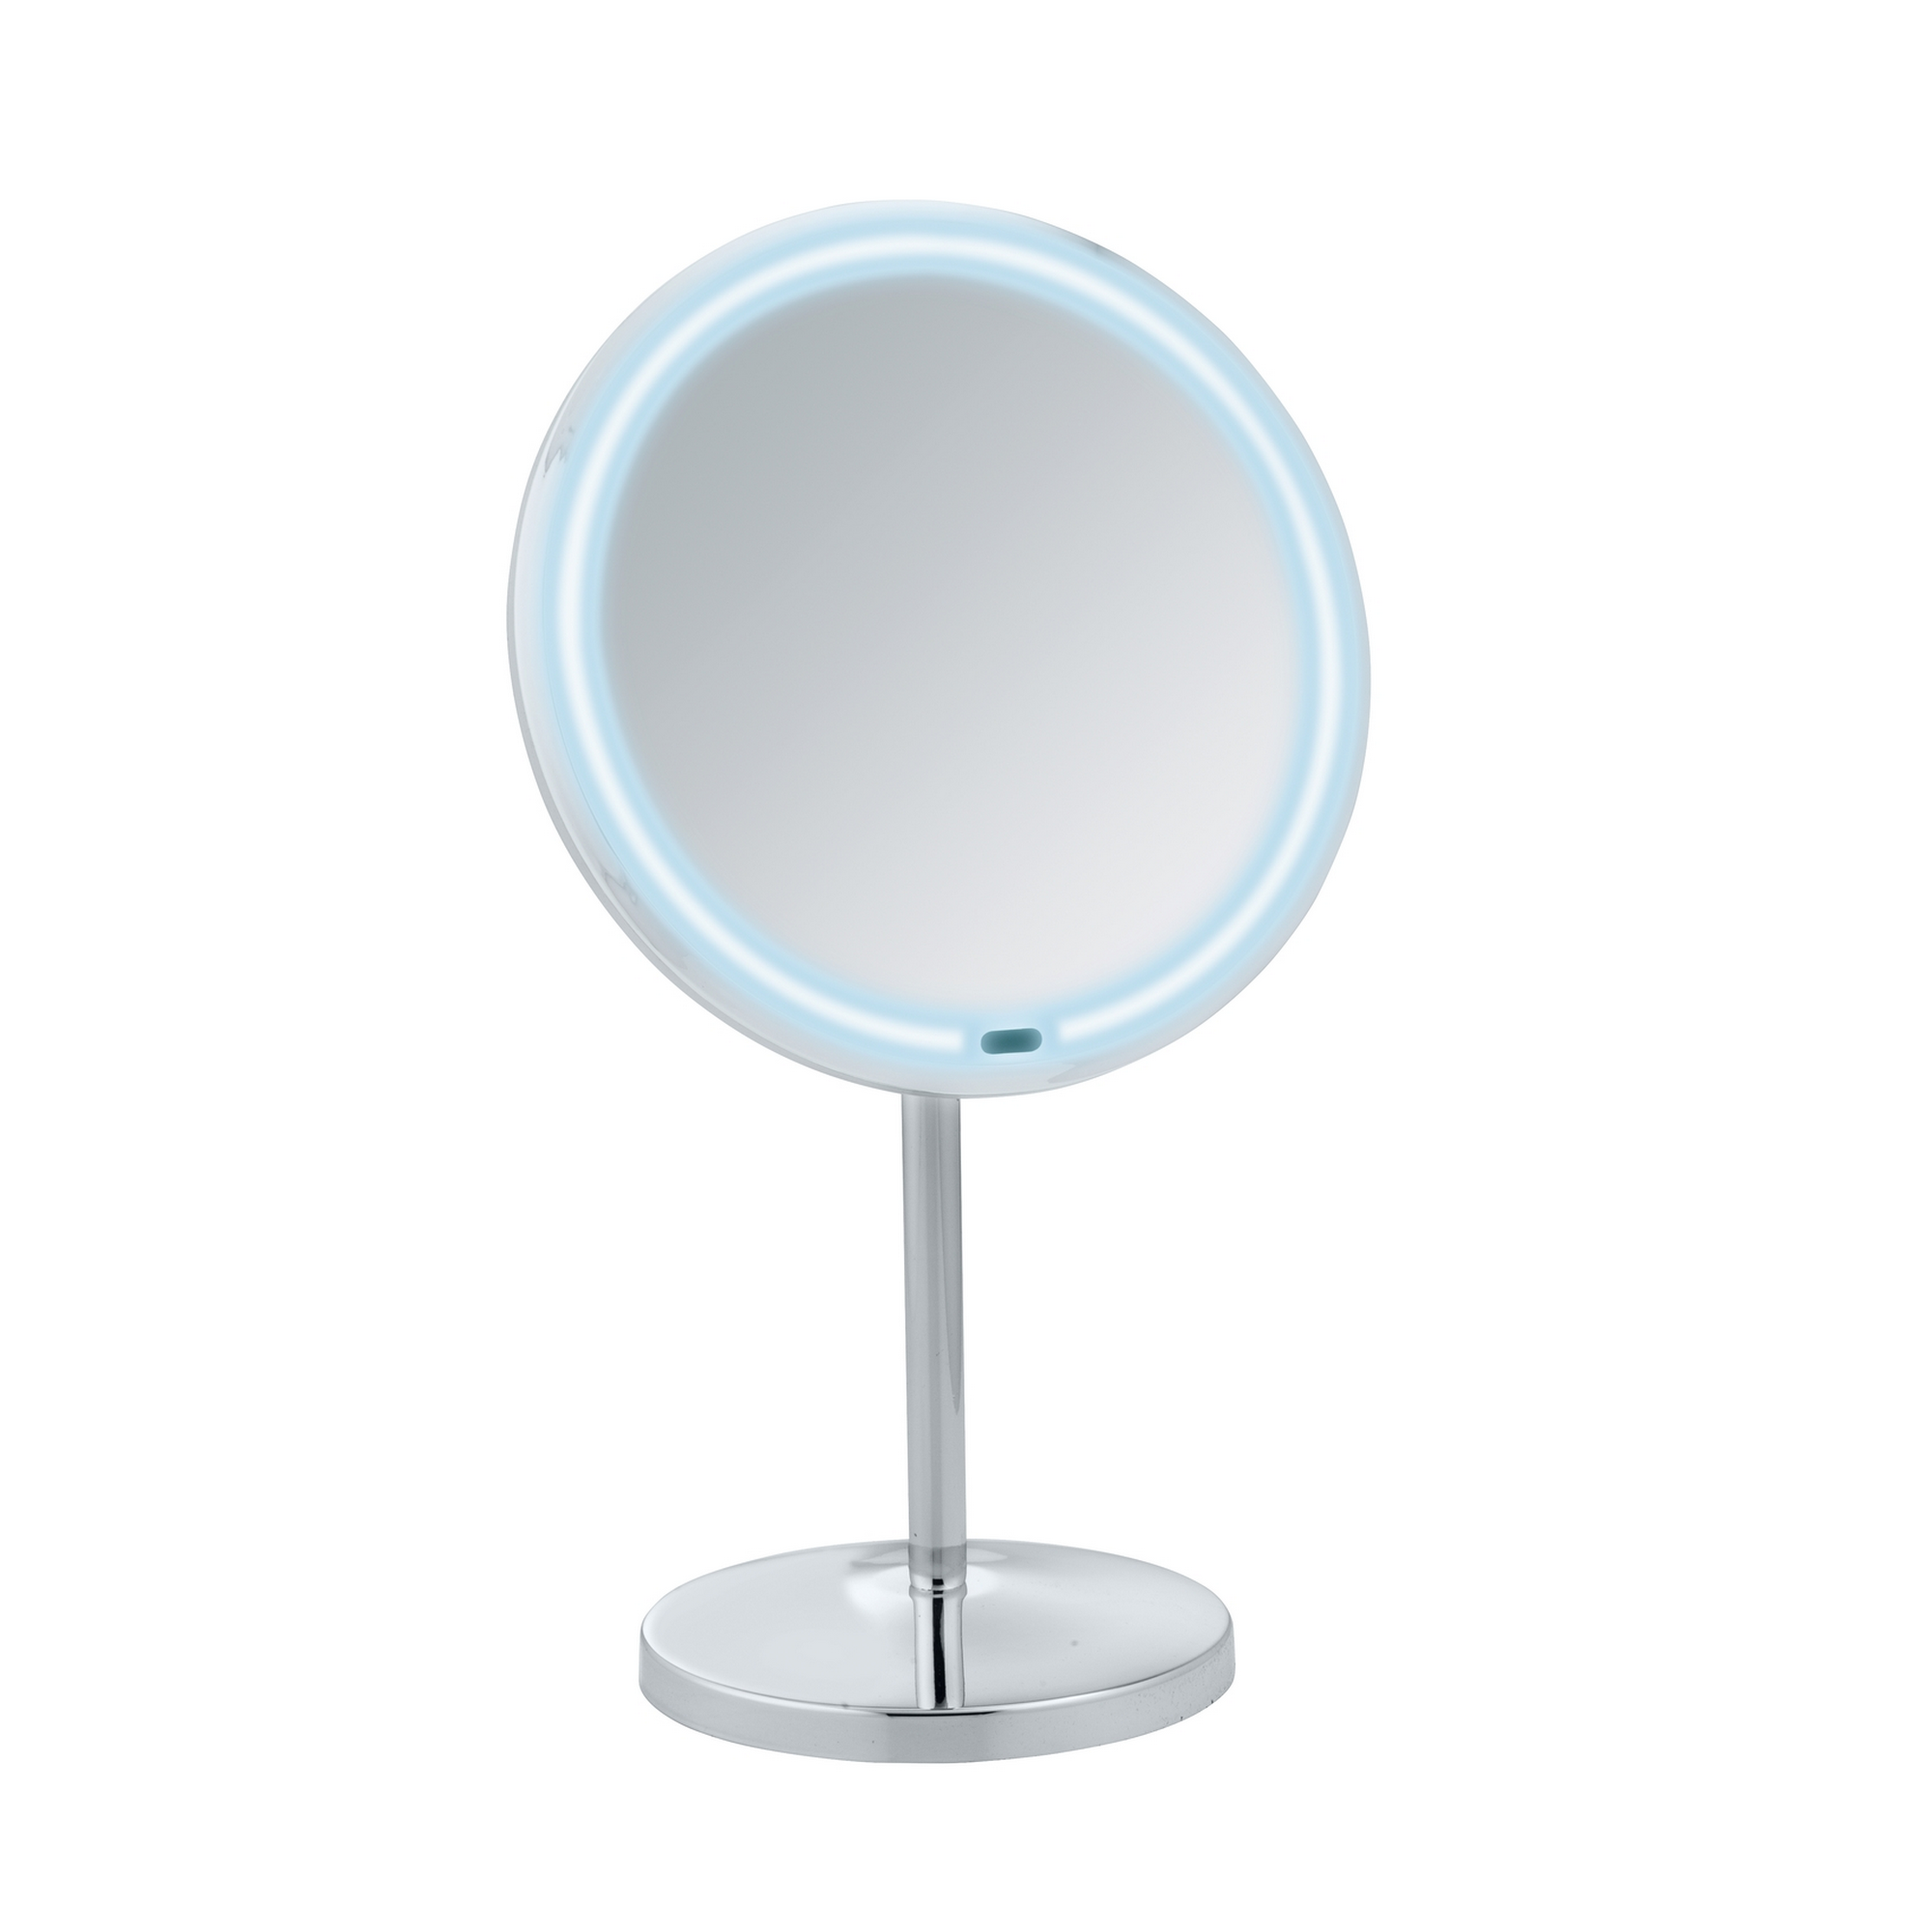 Standspiegel 'Onno' mit LED, silber glänzend Ø 20 cm, mit 5-fach Vergrößerung + product picture